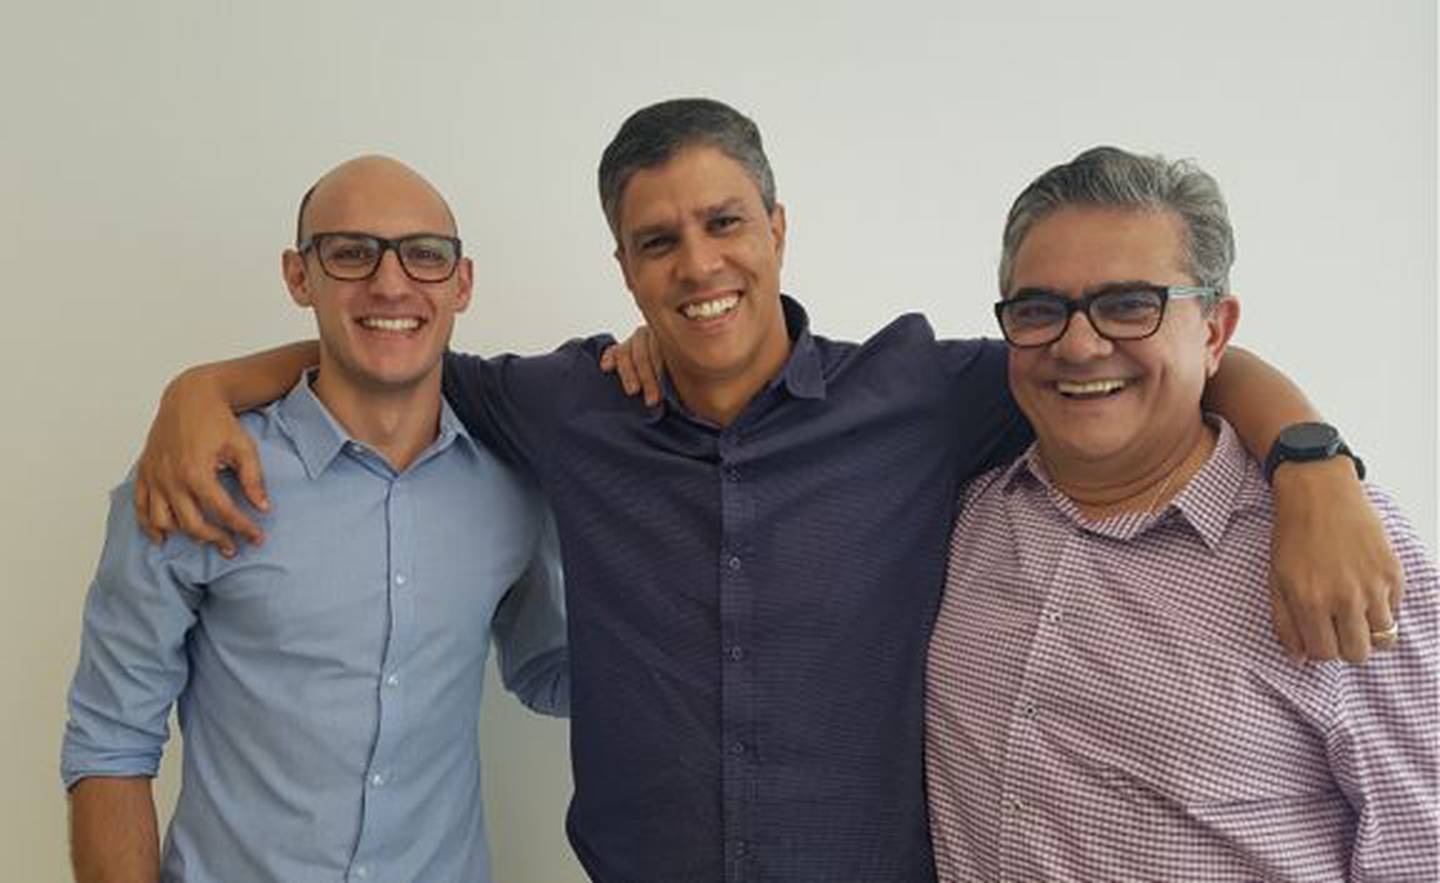 Marcelo Guarnieri, Ricardo Araújo, and Celso Queiroz - cofundadores da Kangu, adquirida pelo Mercado Livre nesta semana